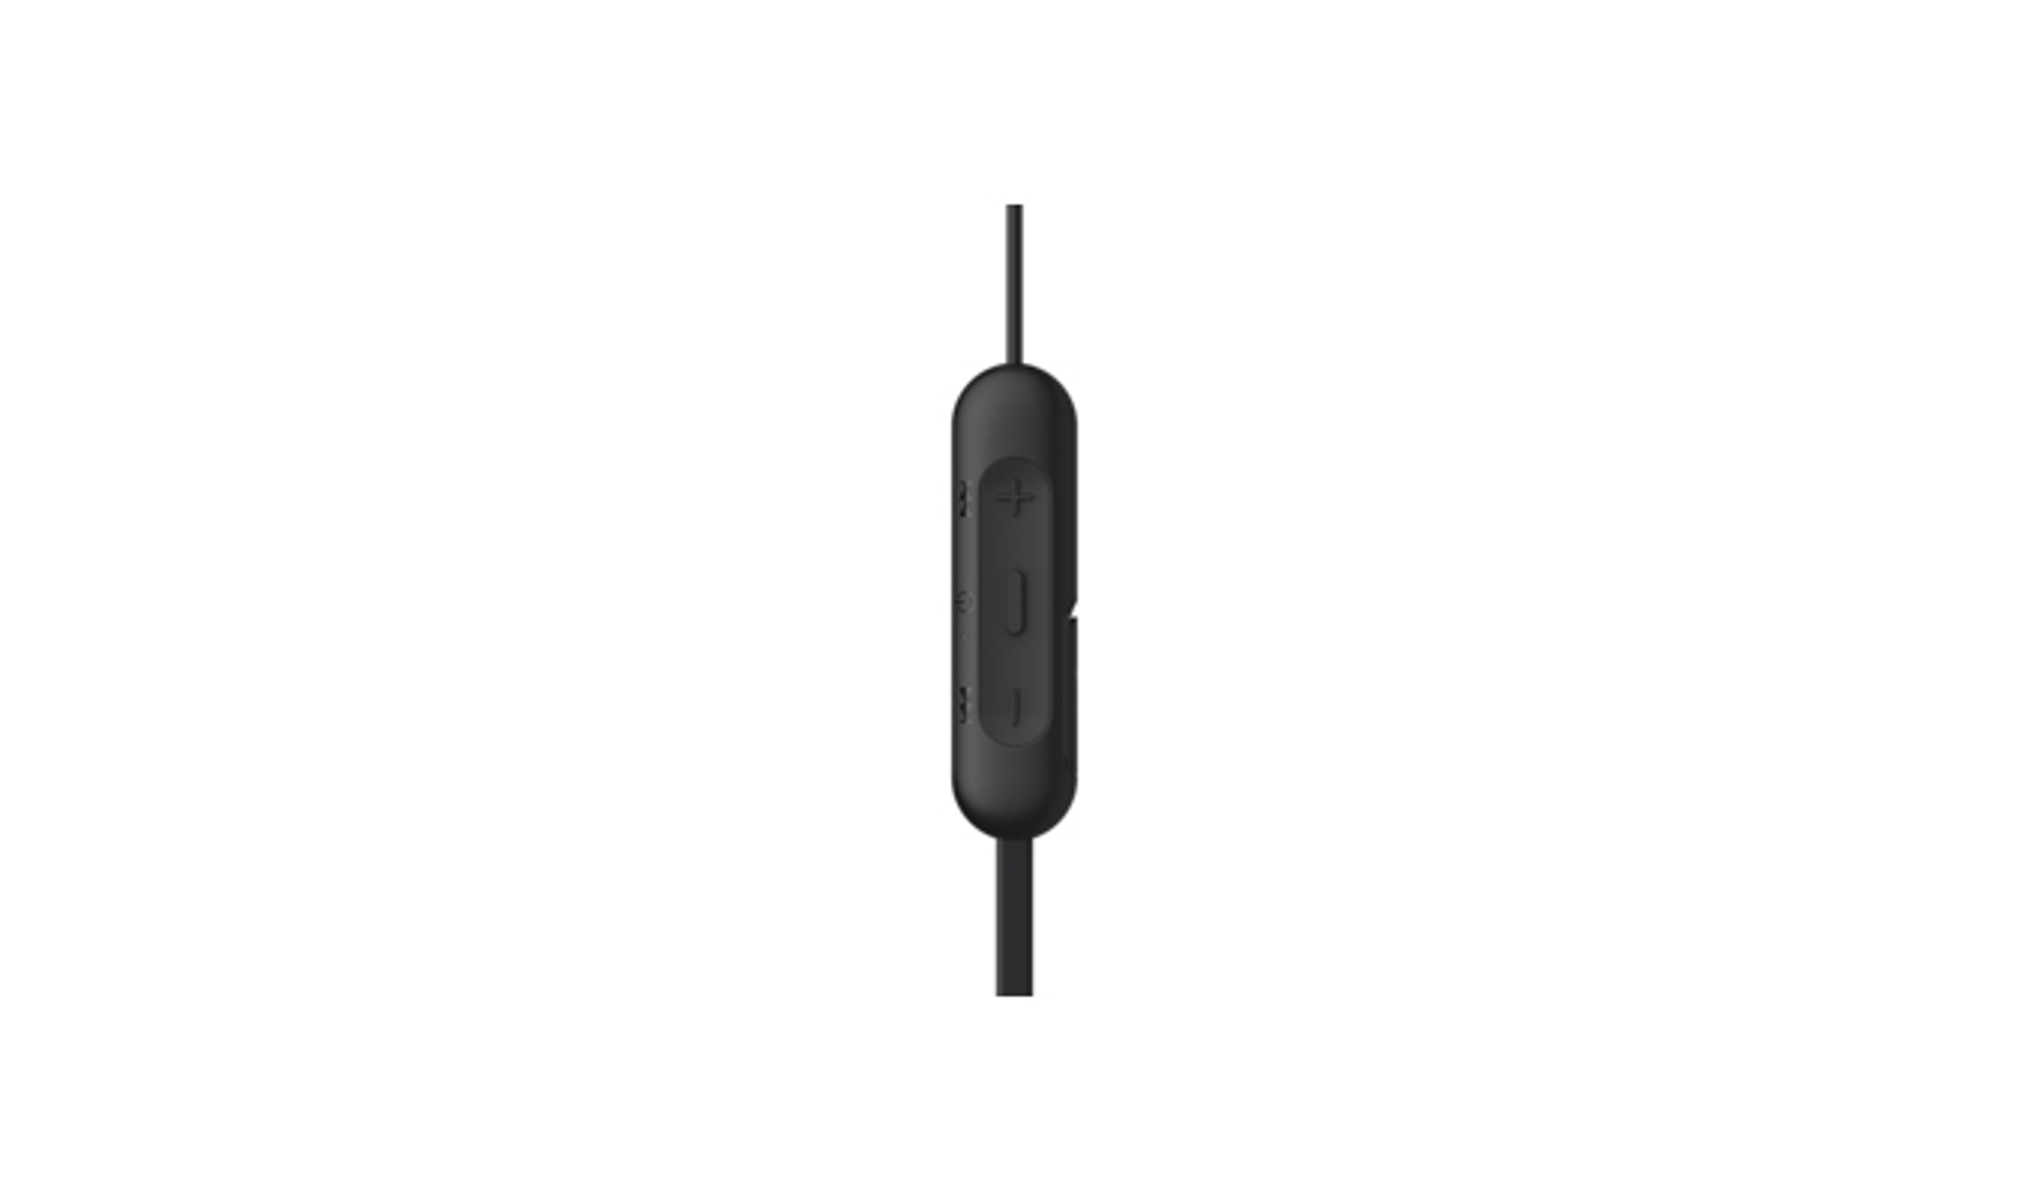 SONY WI-C200, schwarz In-ear Bluetooth Kopfhörer